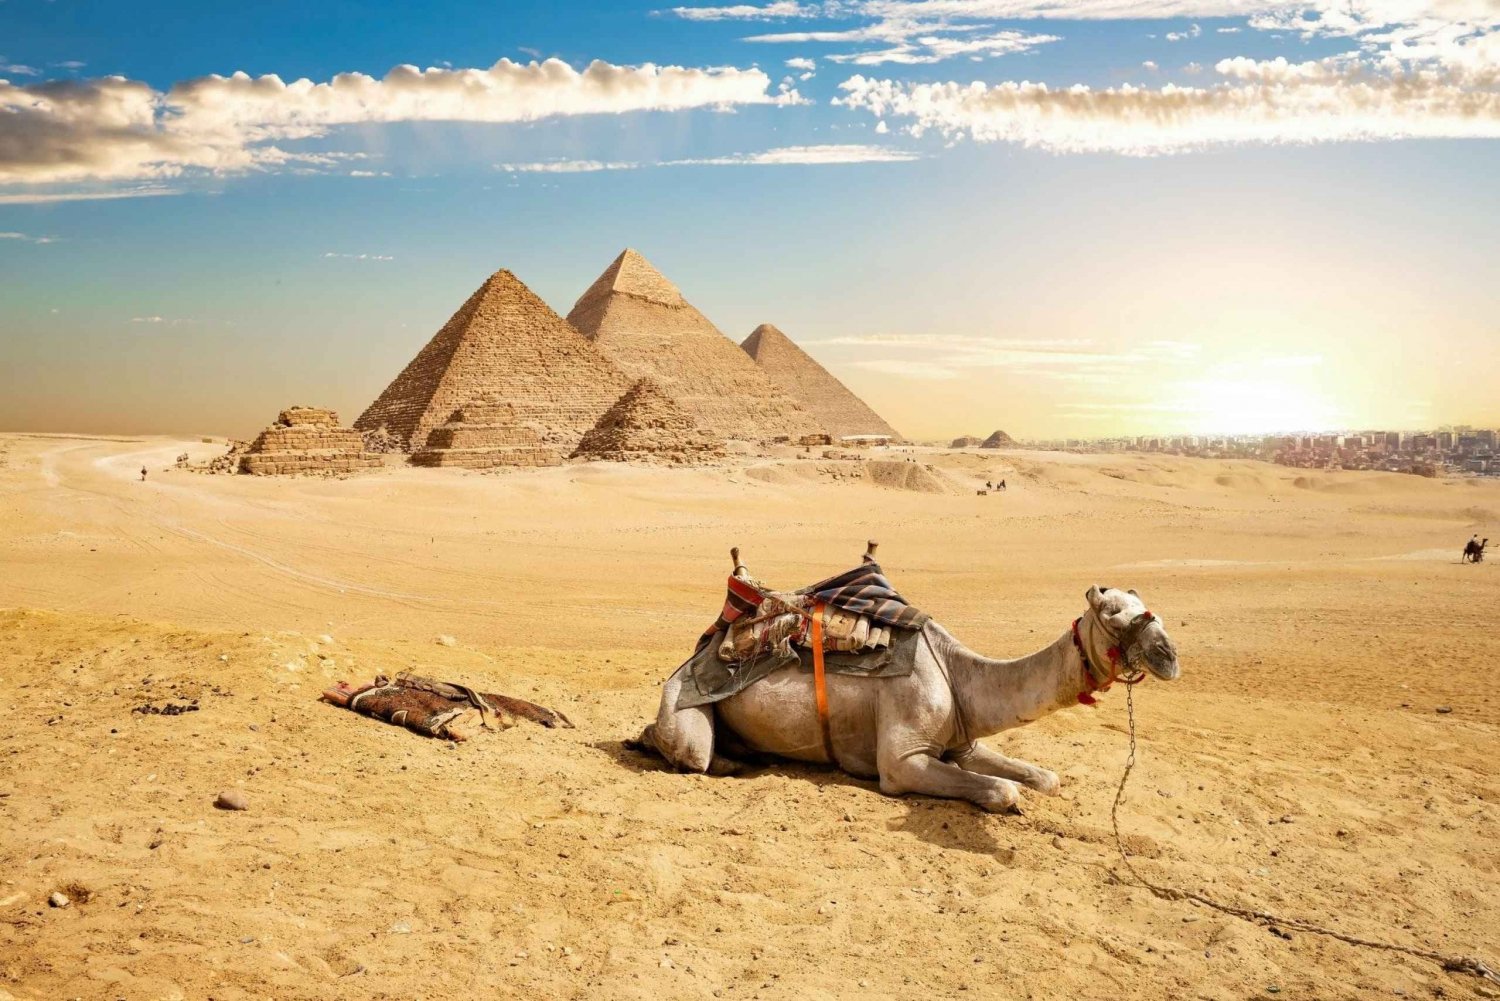 Yksityinen retki kamelin kanssa Gizan pyramideille Egyptin museoon